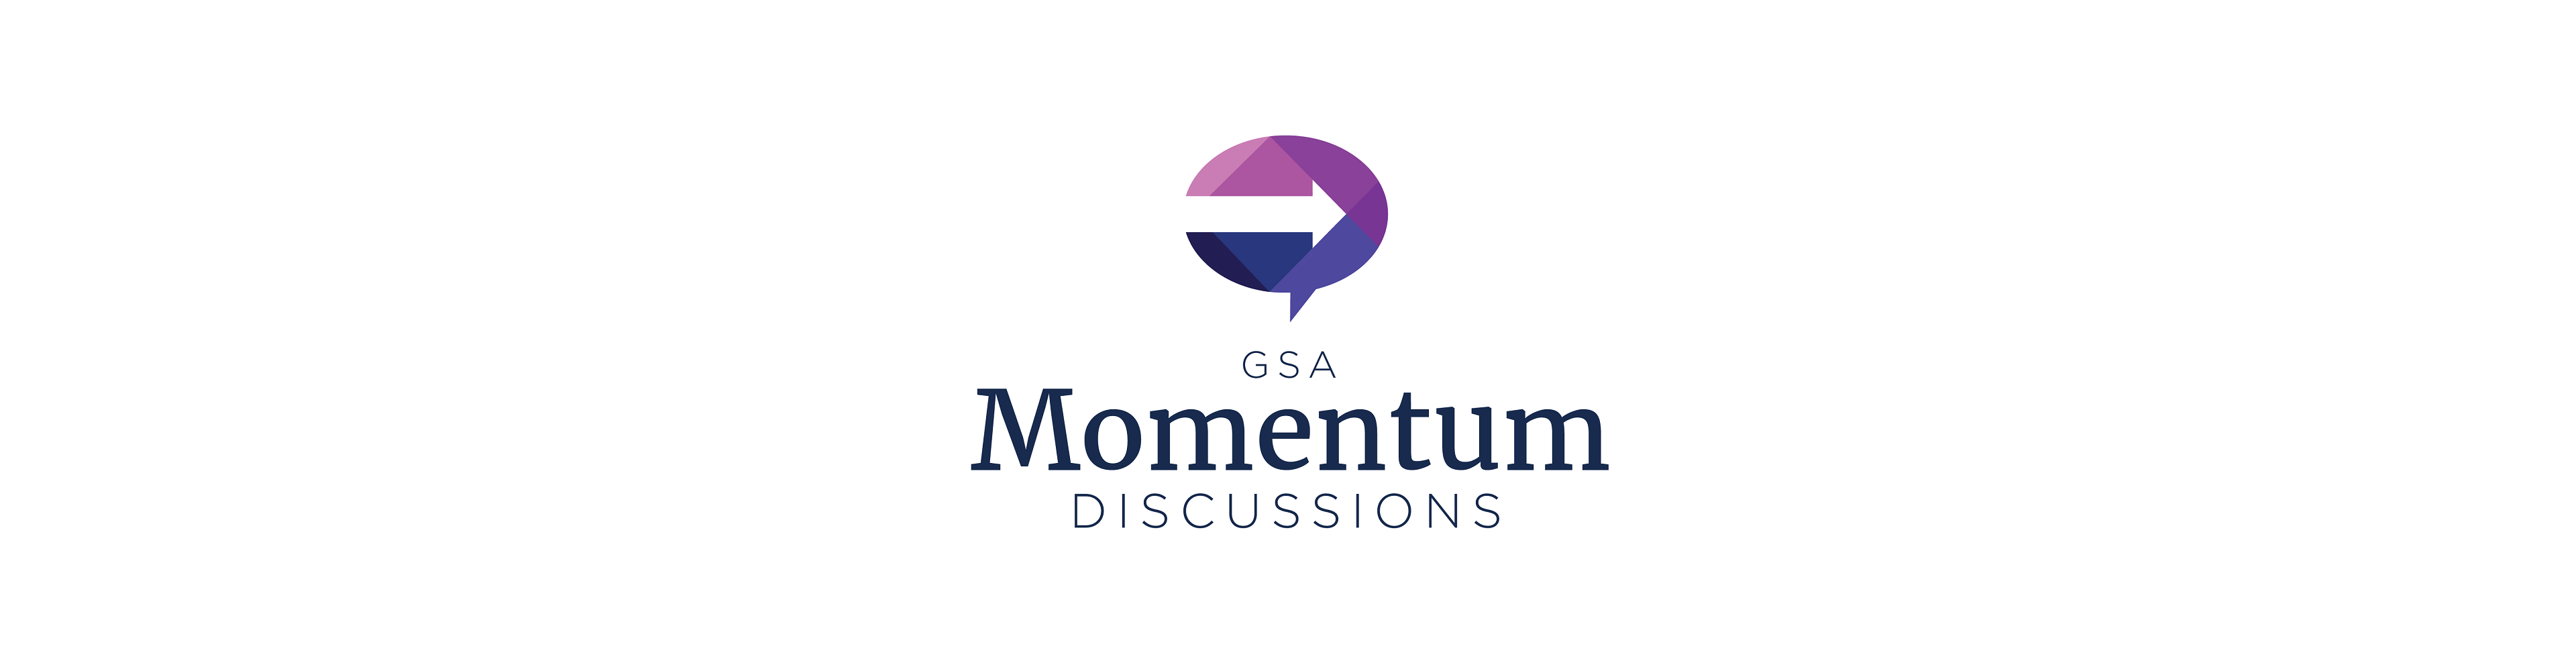 GSA Momentum Discussions